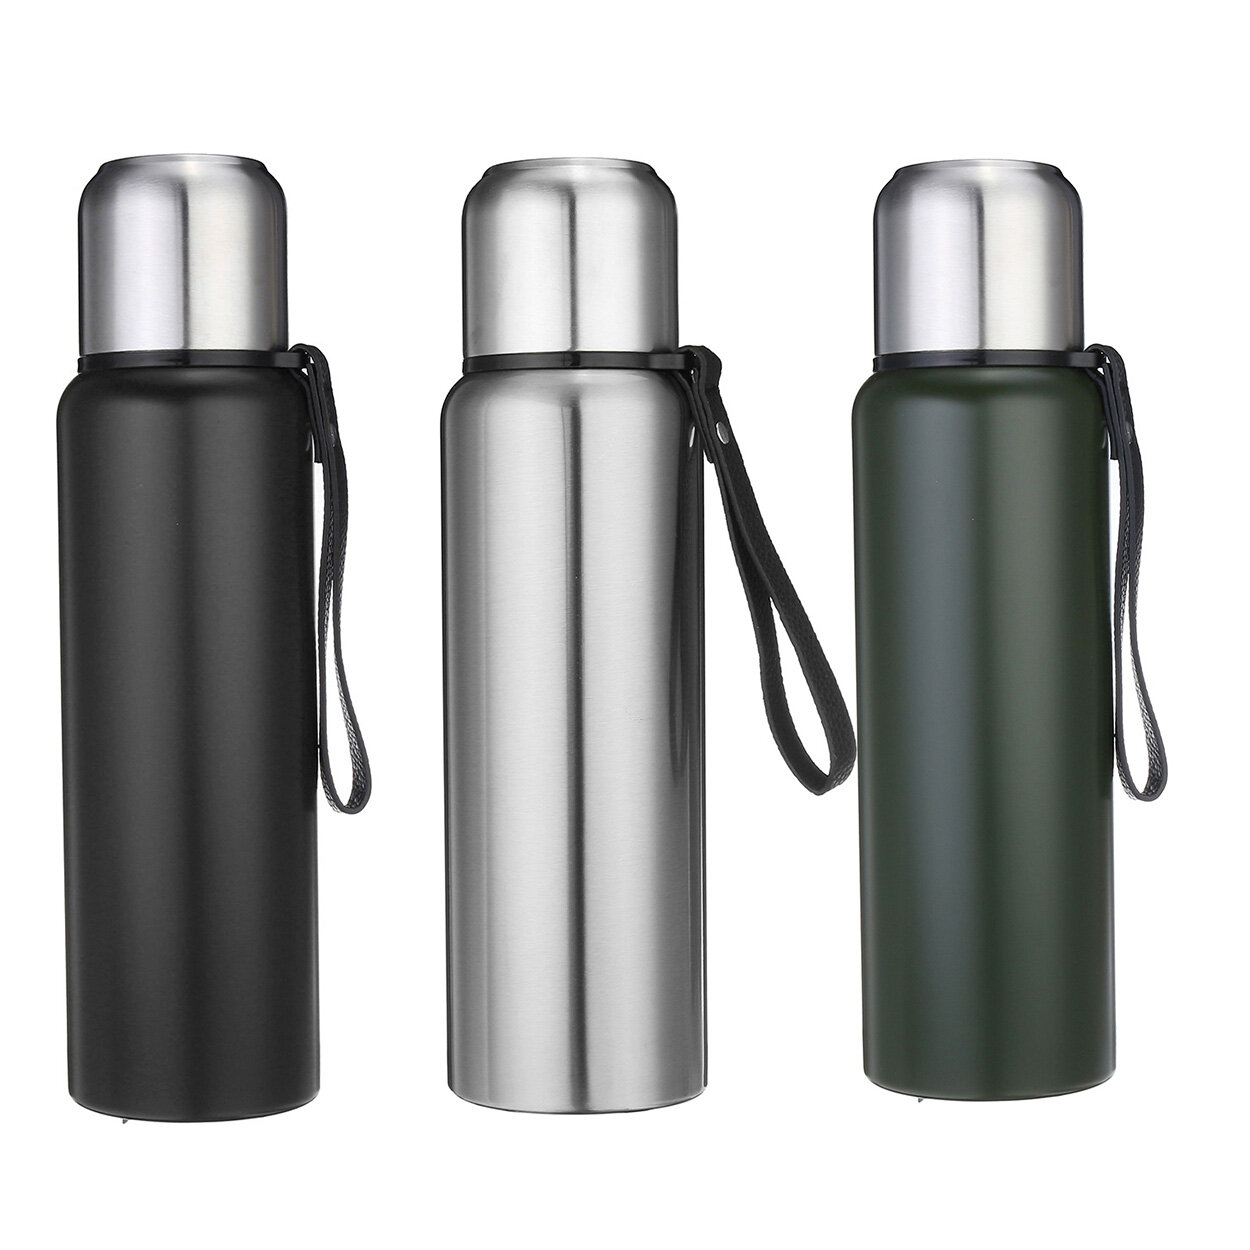 Ανοξείδωτα μπουκάλια νερού με μόνωση κενού για αθλήματα στον αέρα εξωτερικού χώρου 800/1000/1500 ml.